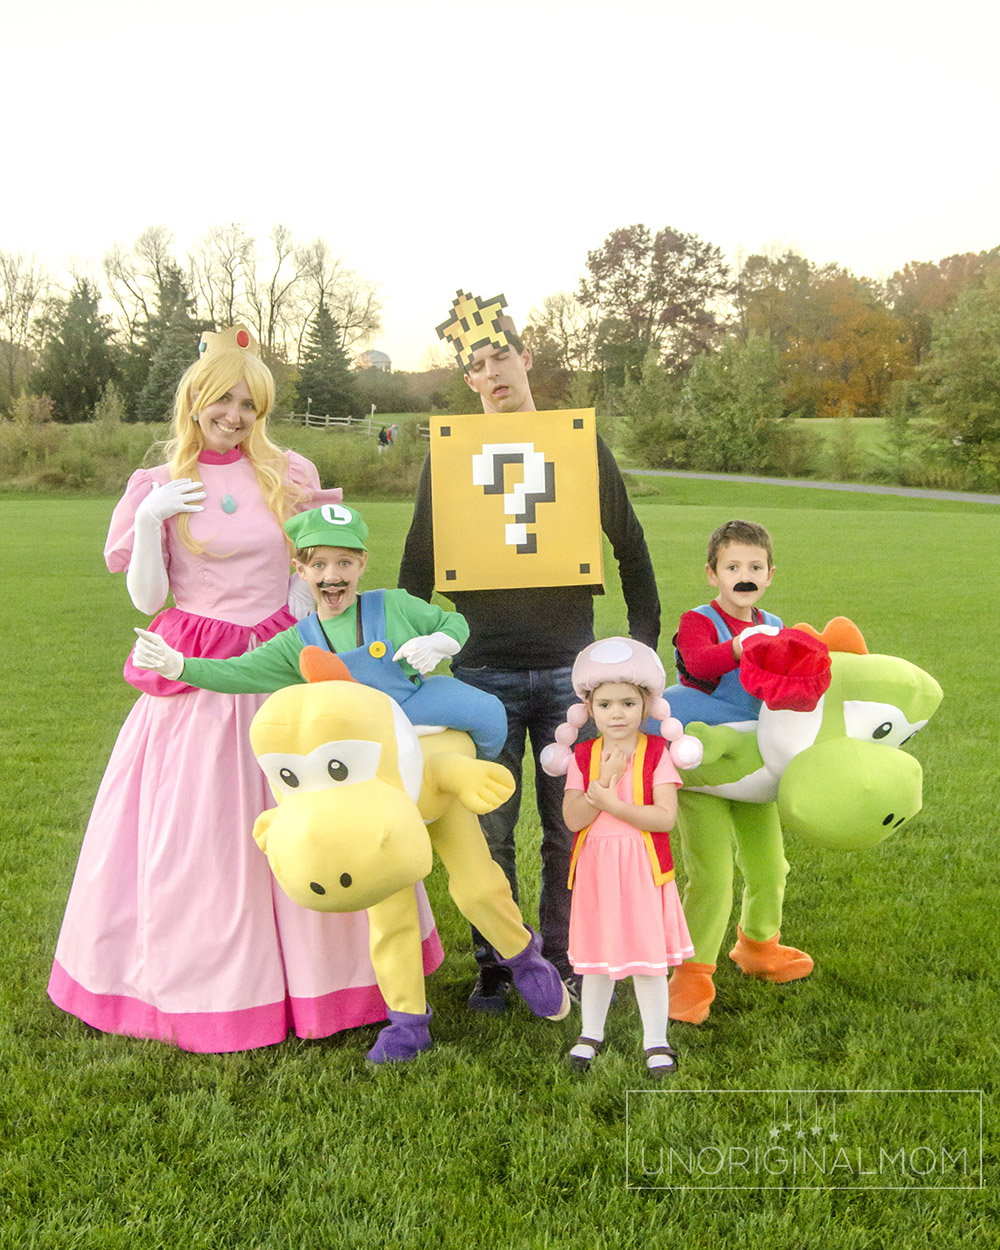 Super Mario Family Costume Theme The Mom Creative, 48% OFF